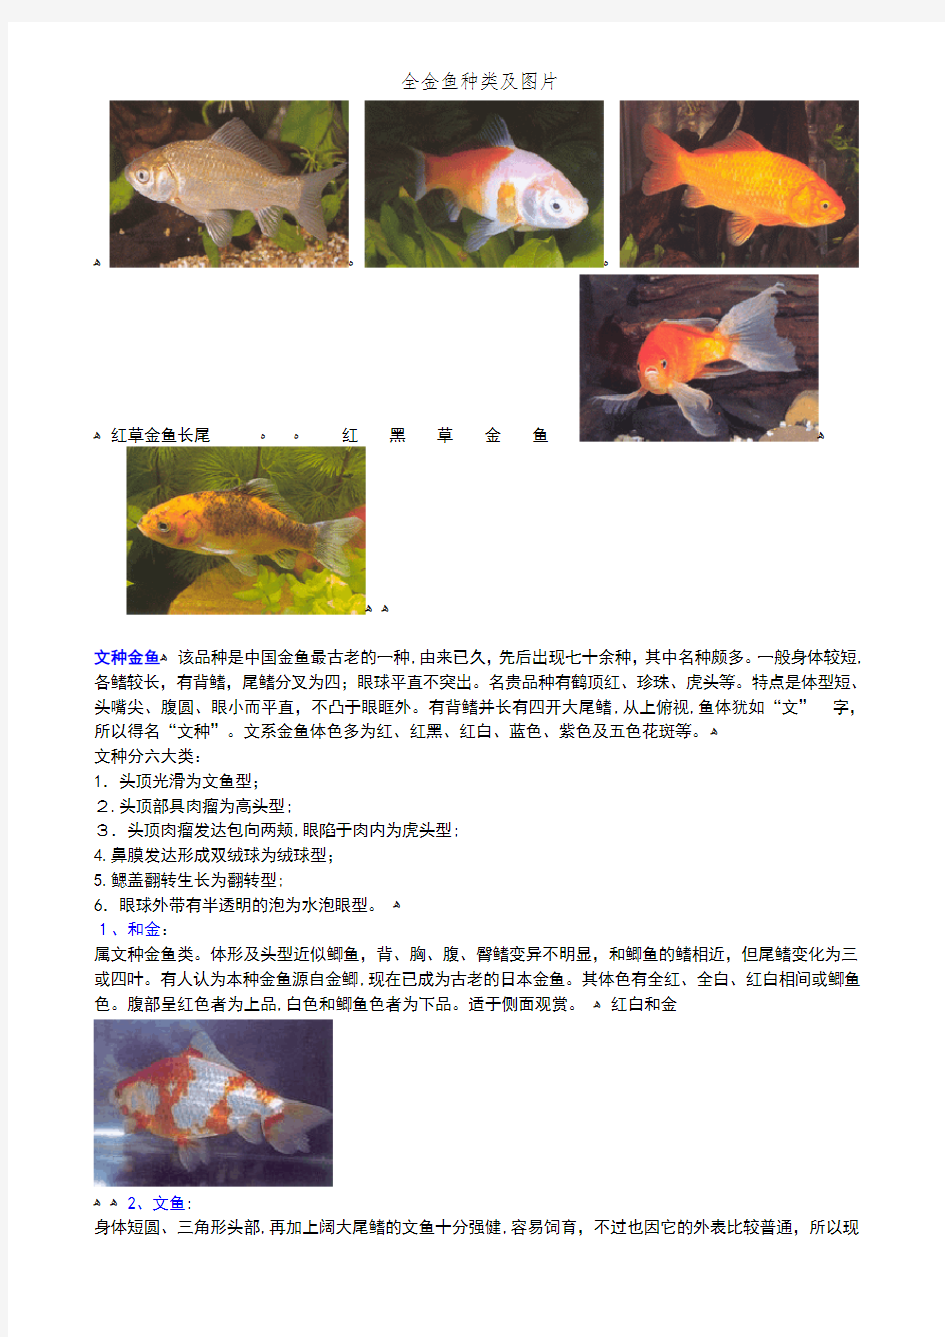 全金鱼种类及图片